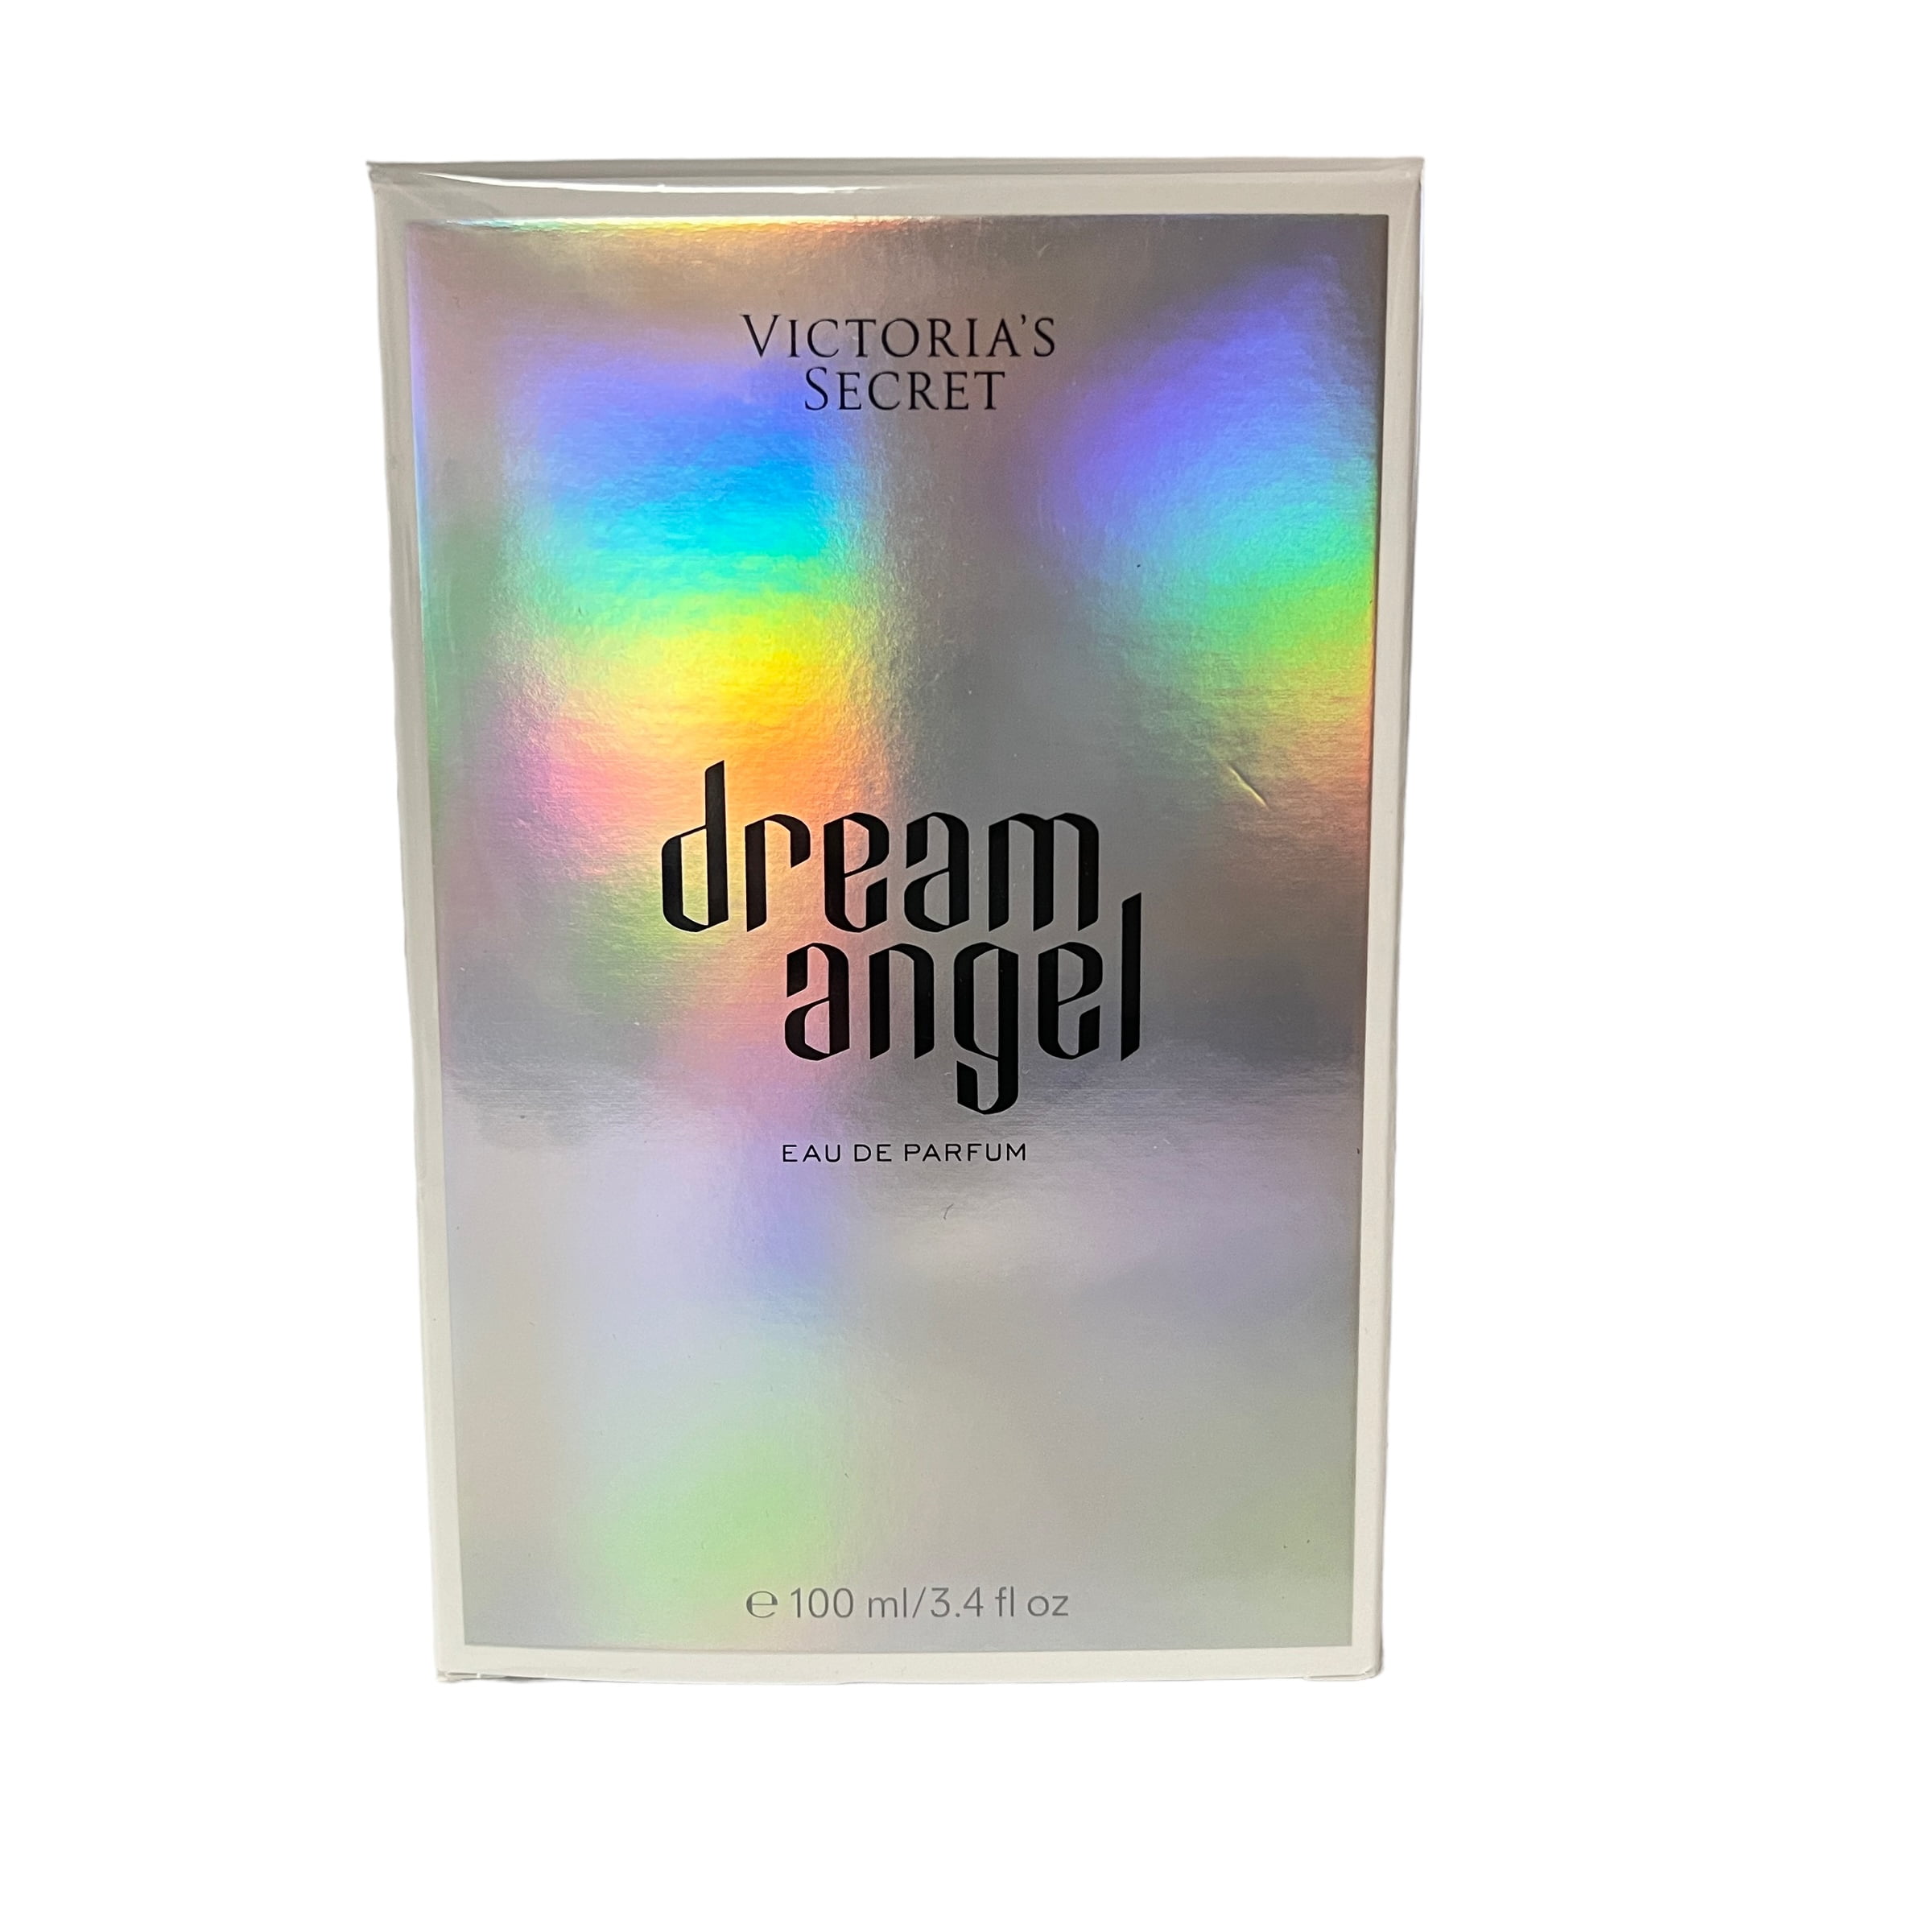 VICTORIAS SECRET DREAM ANGEL PERFUME EDP EAU DE PARFUM 3.4 oz 100 ml Sealed